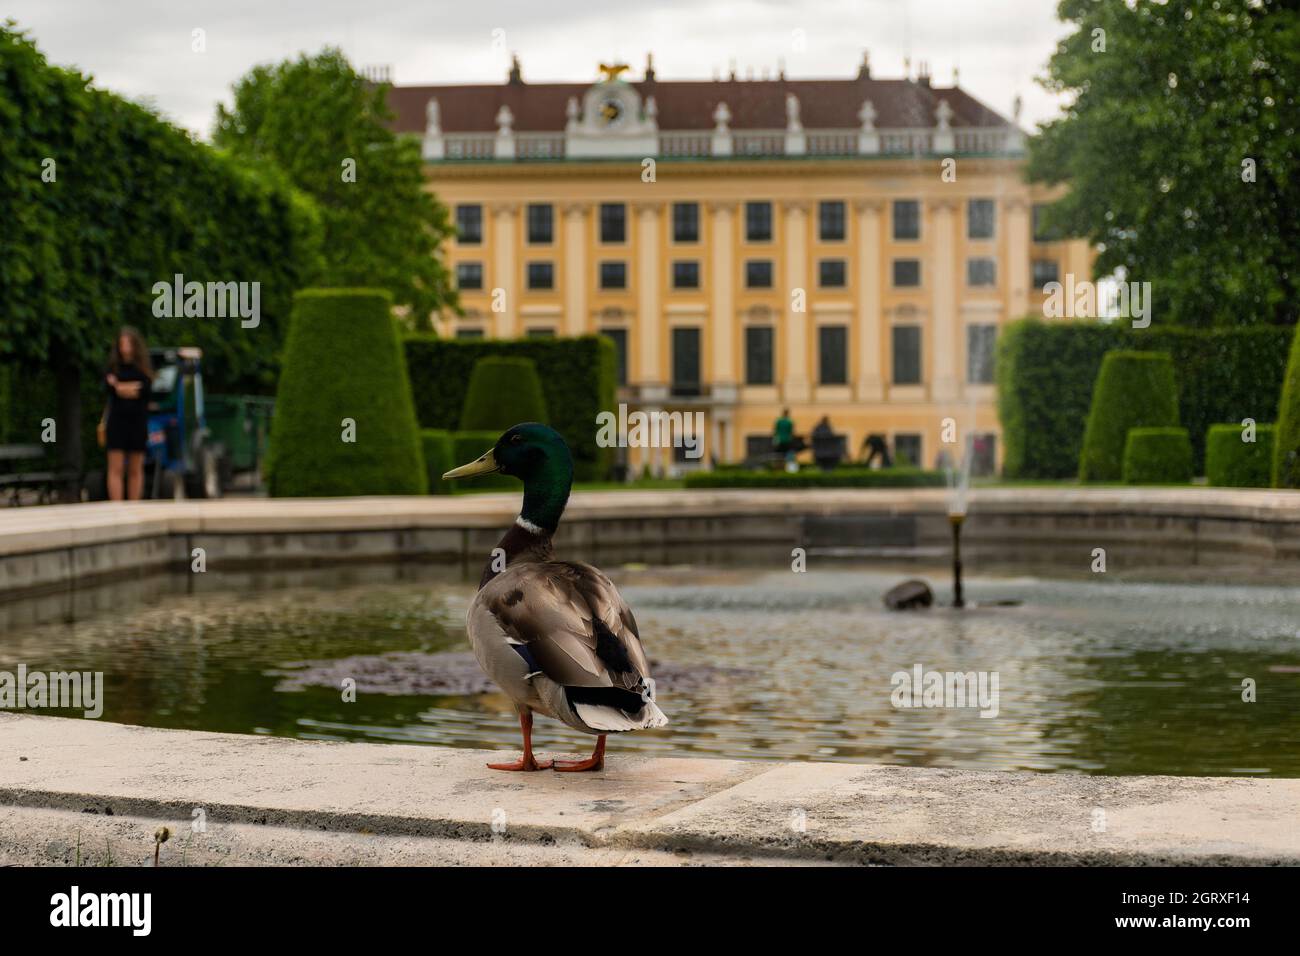 31 de mayo de 2019 Viena, Austria - Edificio palacio Schonbrunn entre jardines. Día de primavera nublado Foto de stock